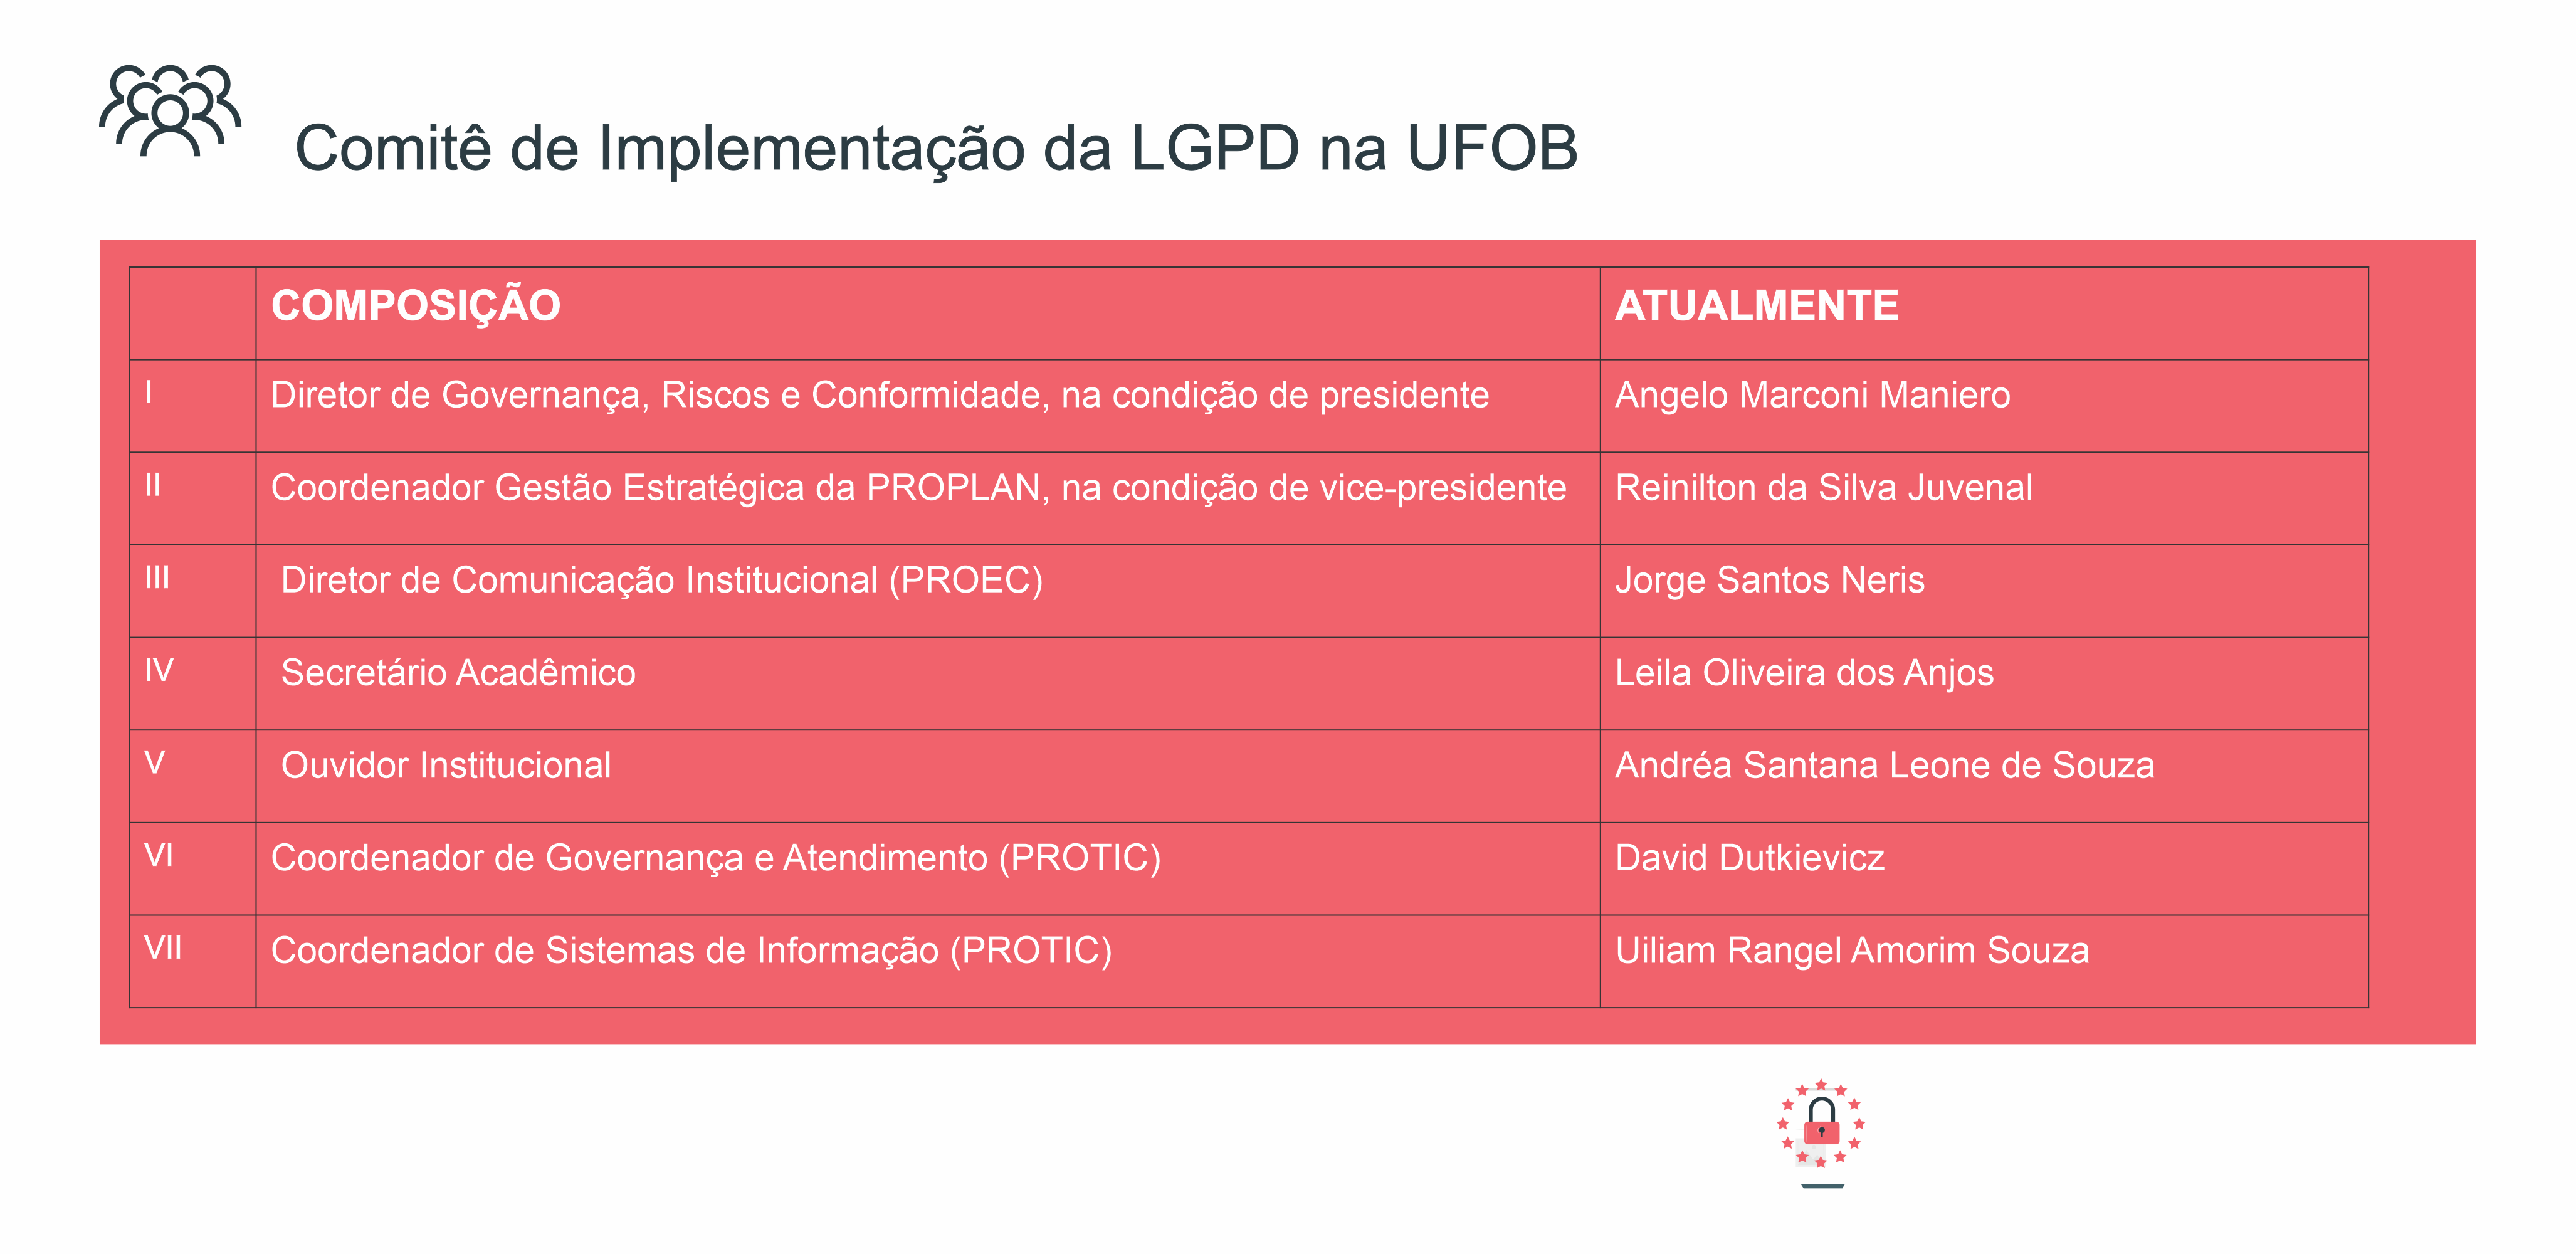 Comitê de Implementação da LGPD na UFOB